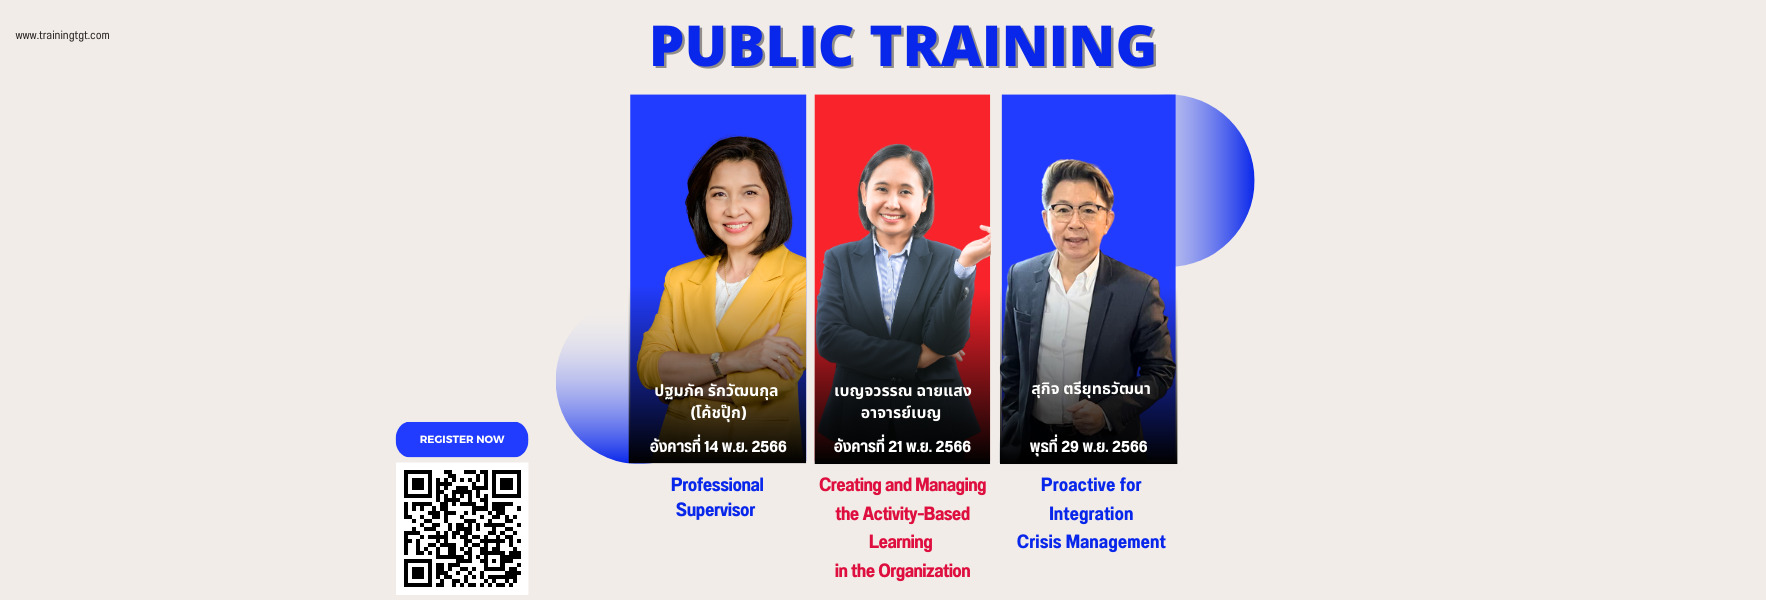 public training